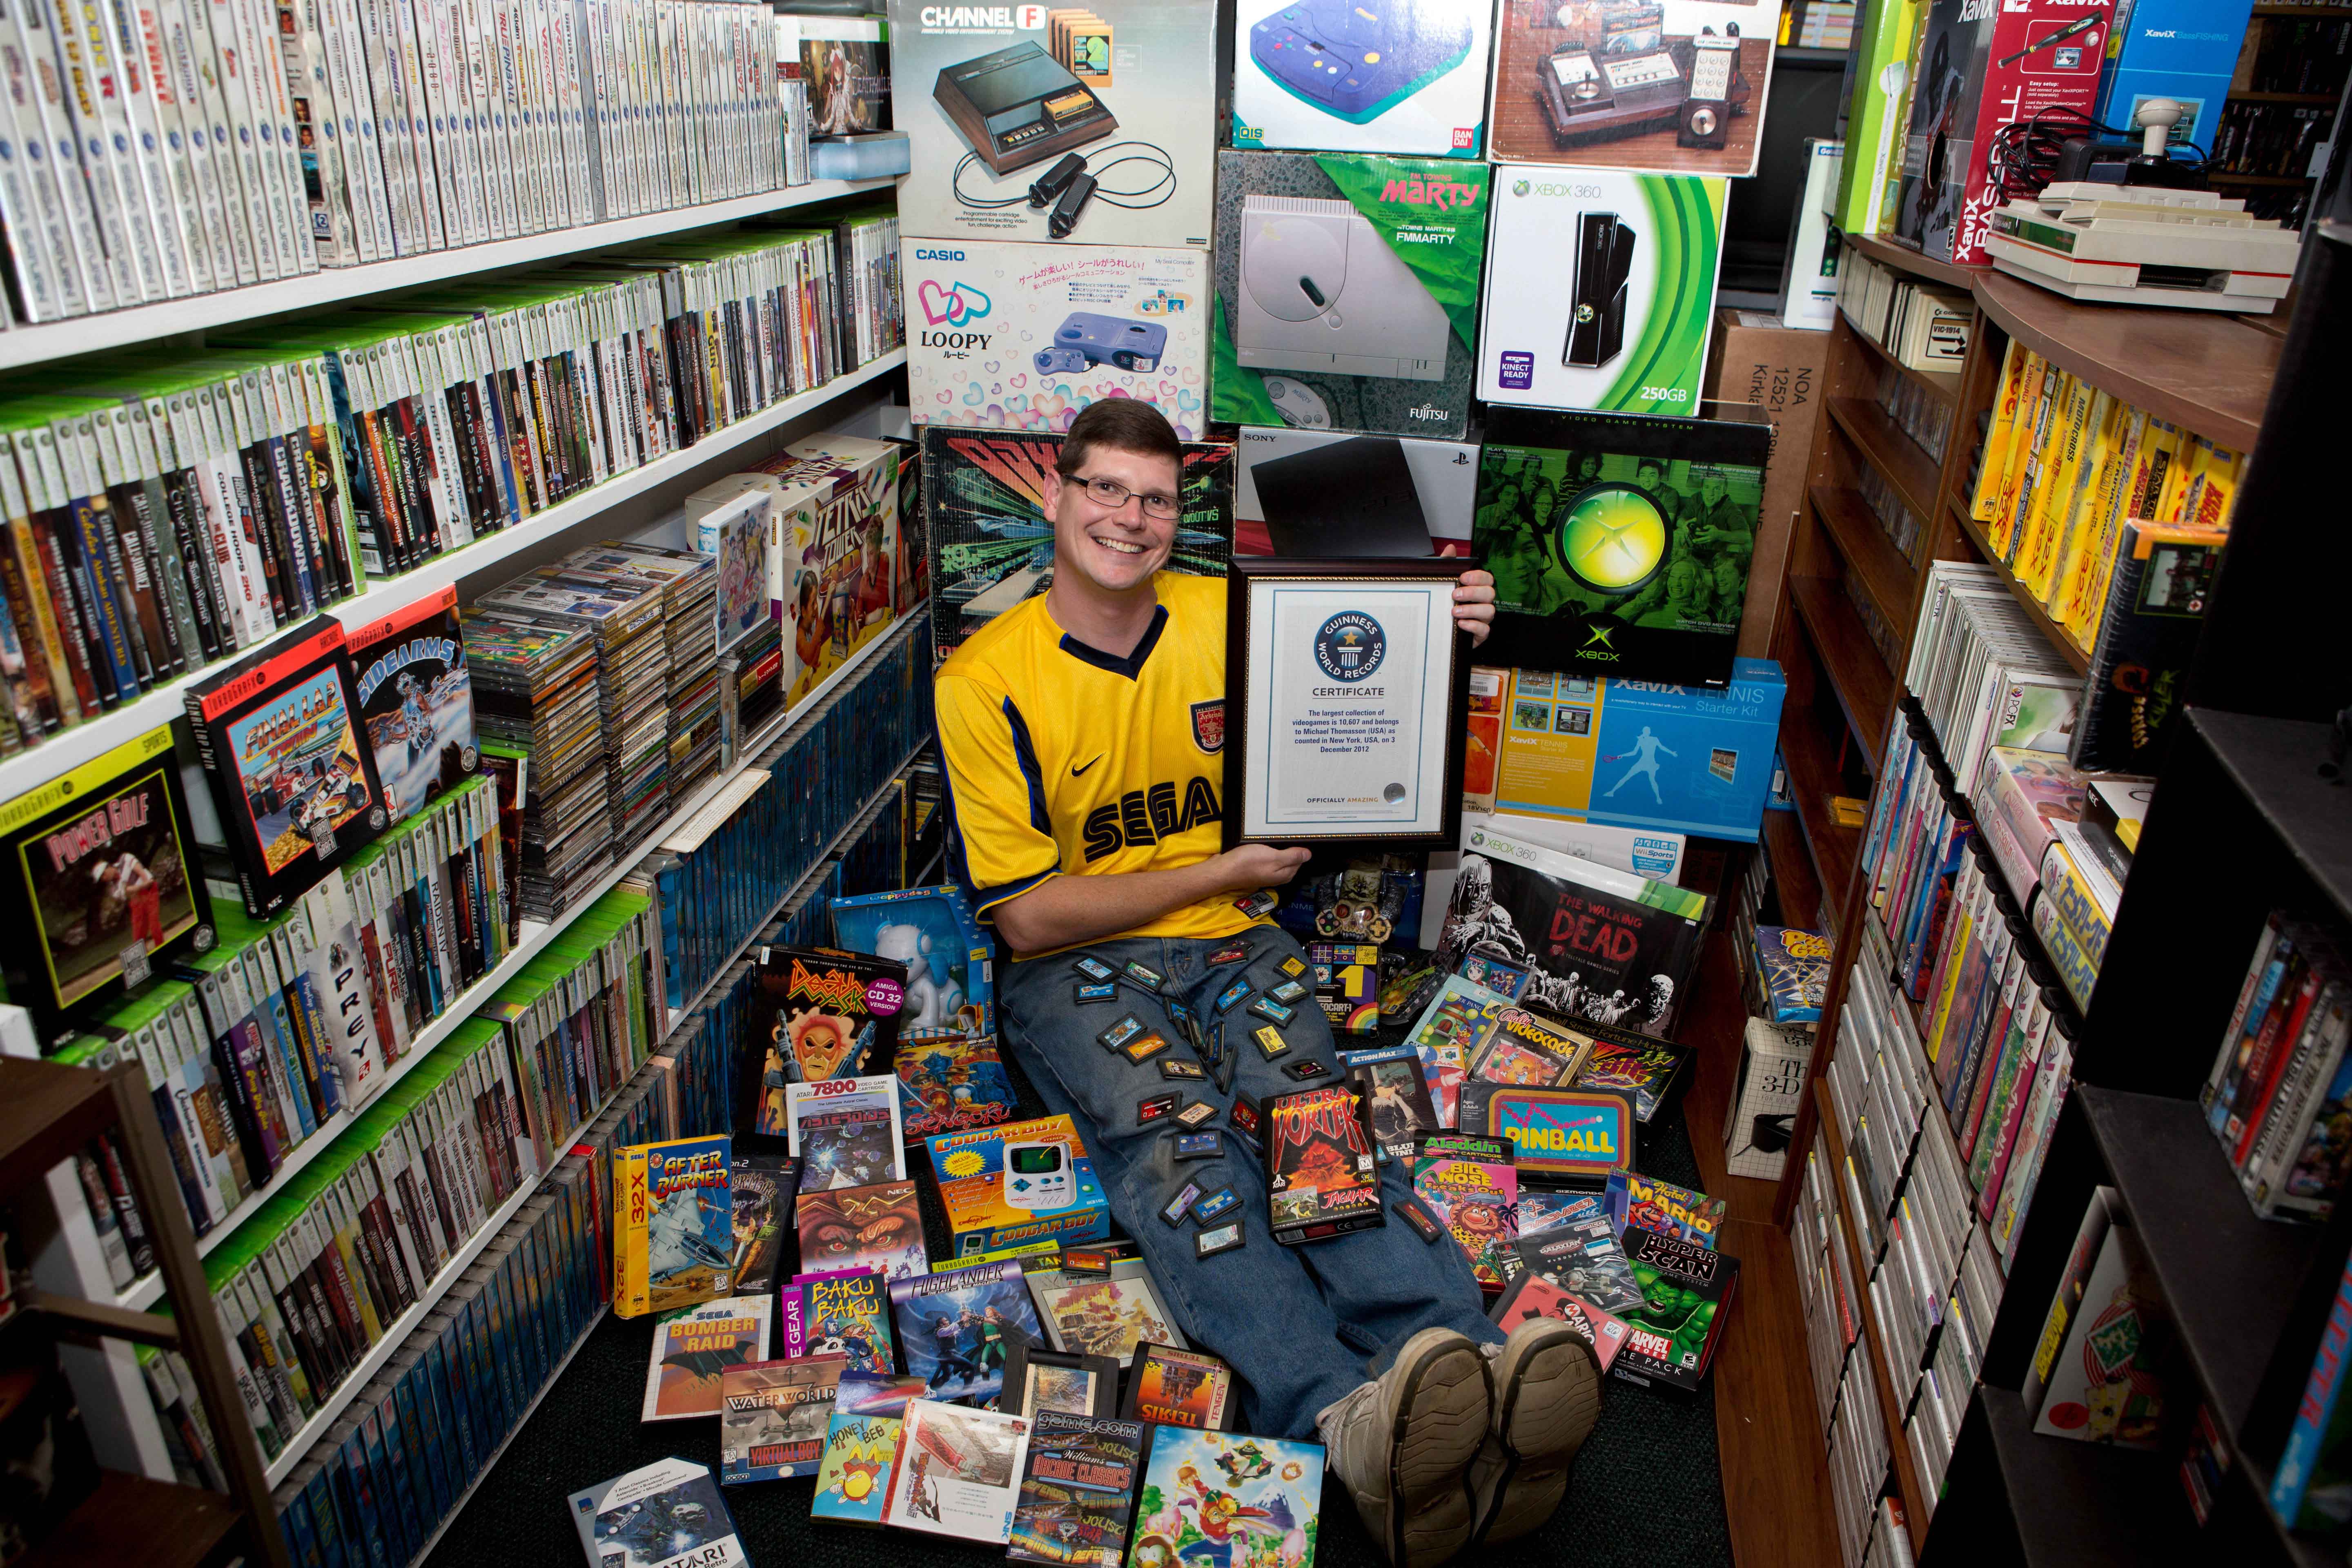 Game on gaming store. Самая большая коллекция игр. Коллекционер игровых приставок. Коллекционирование компьютерных игр. Самая большая коллекция видеоигр в мире.